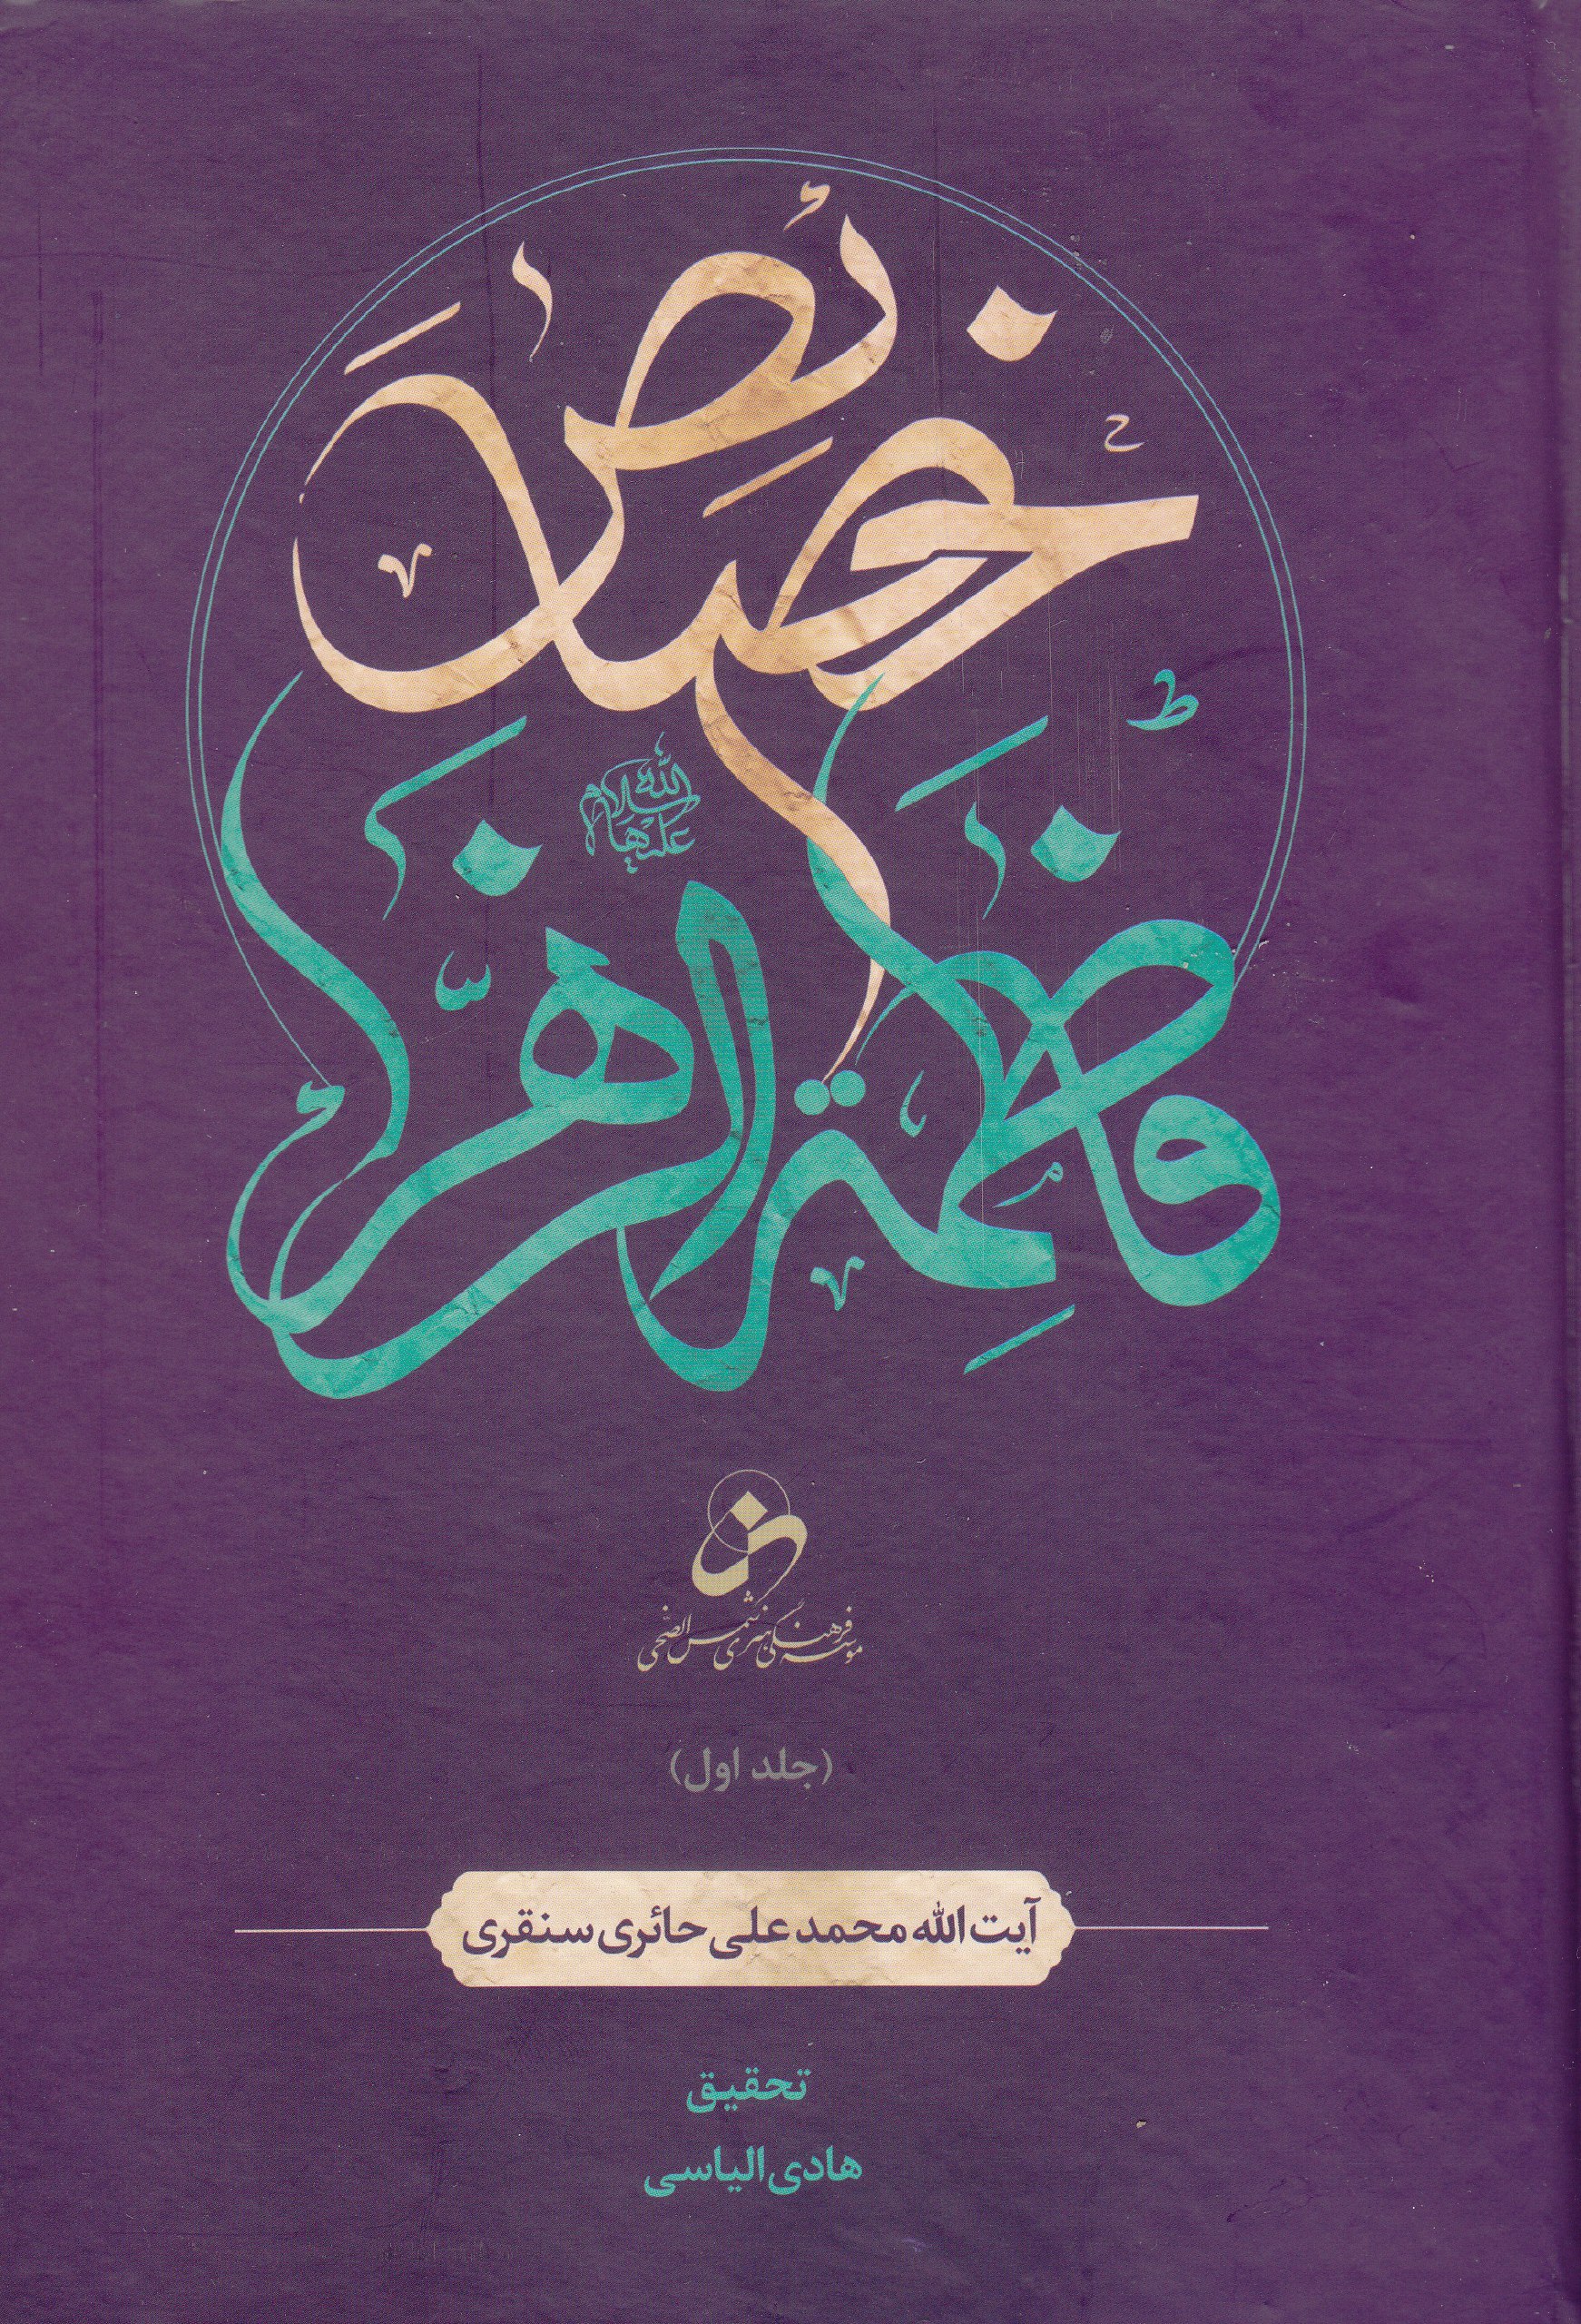 #تازه_کتاب

نگاهی بر مجموعه "خصائص فاطمه الزهرا"
اثر آیت الله"حائری سنقری"

این کتاب مهم‌ترین نگارش 